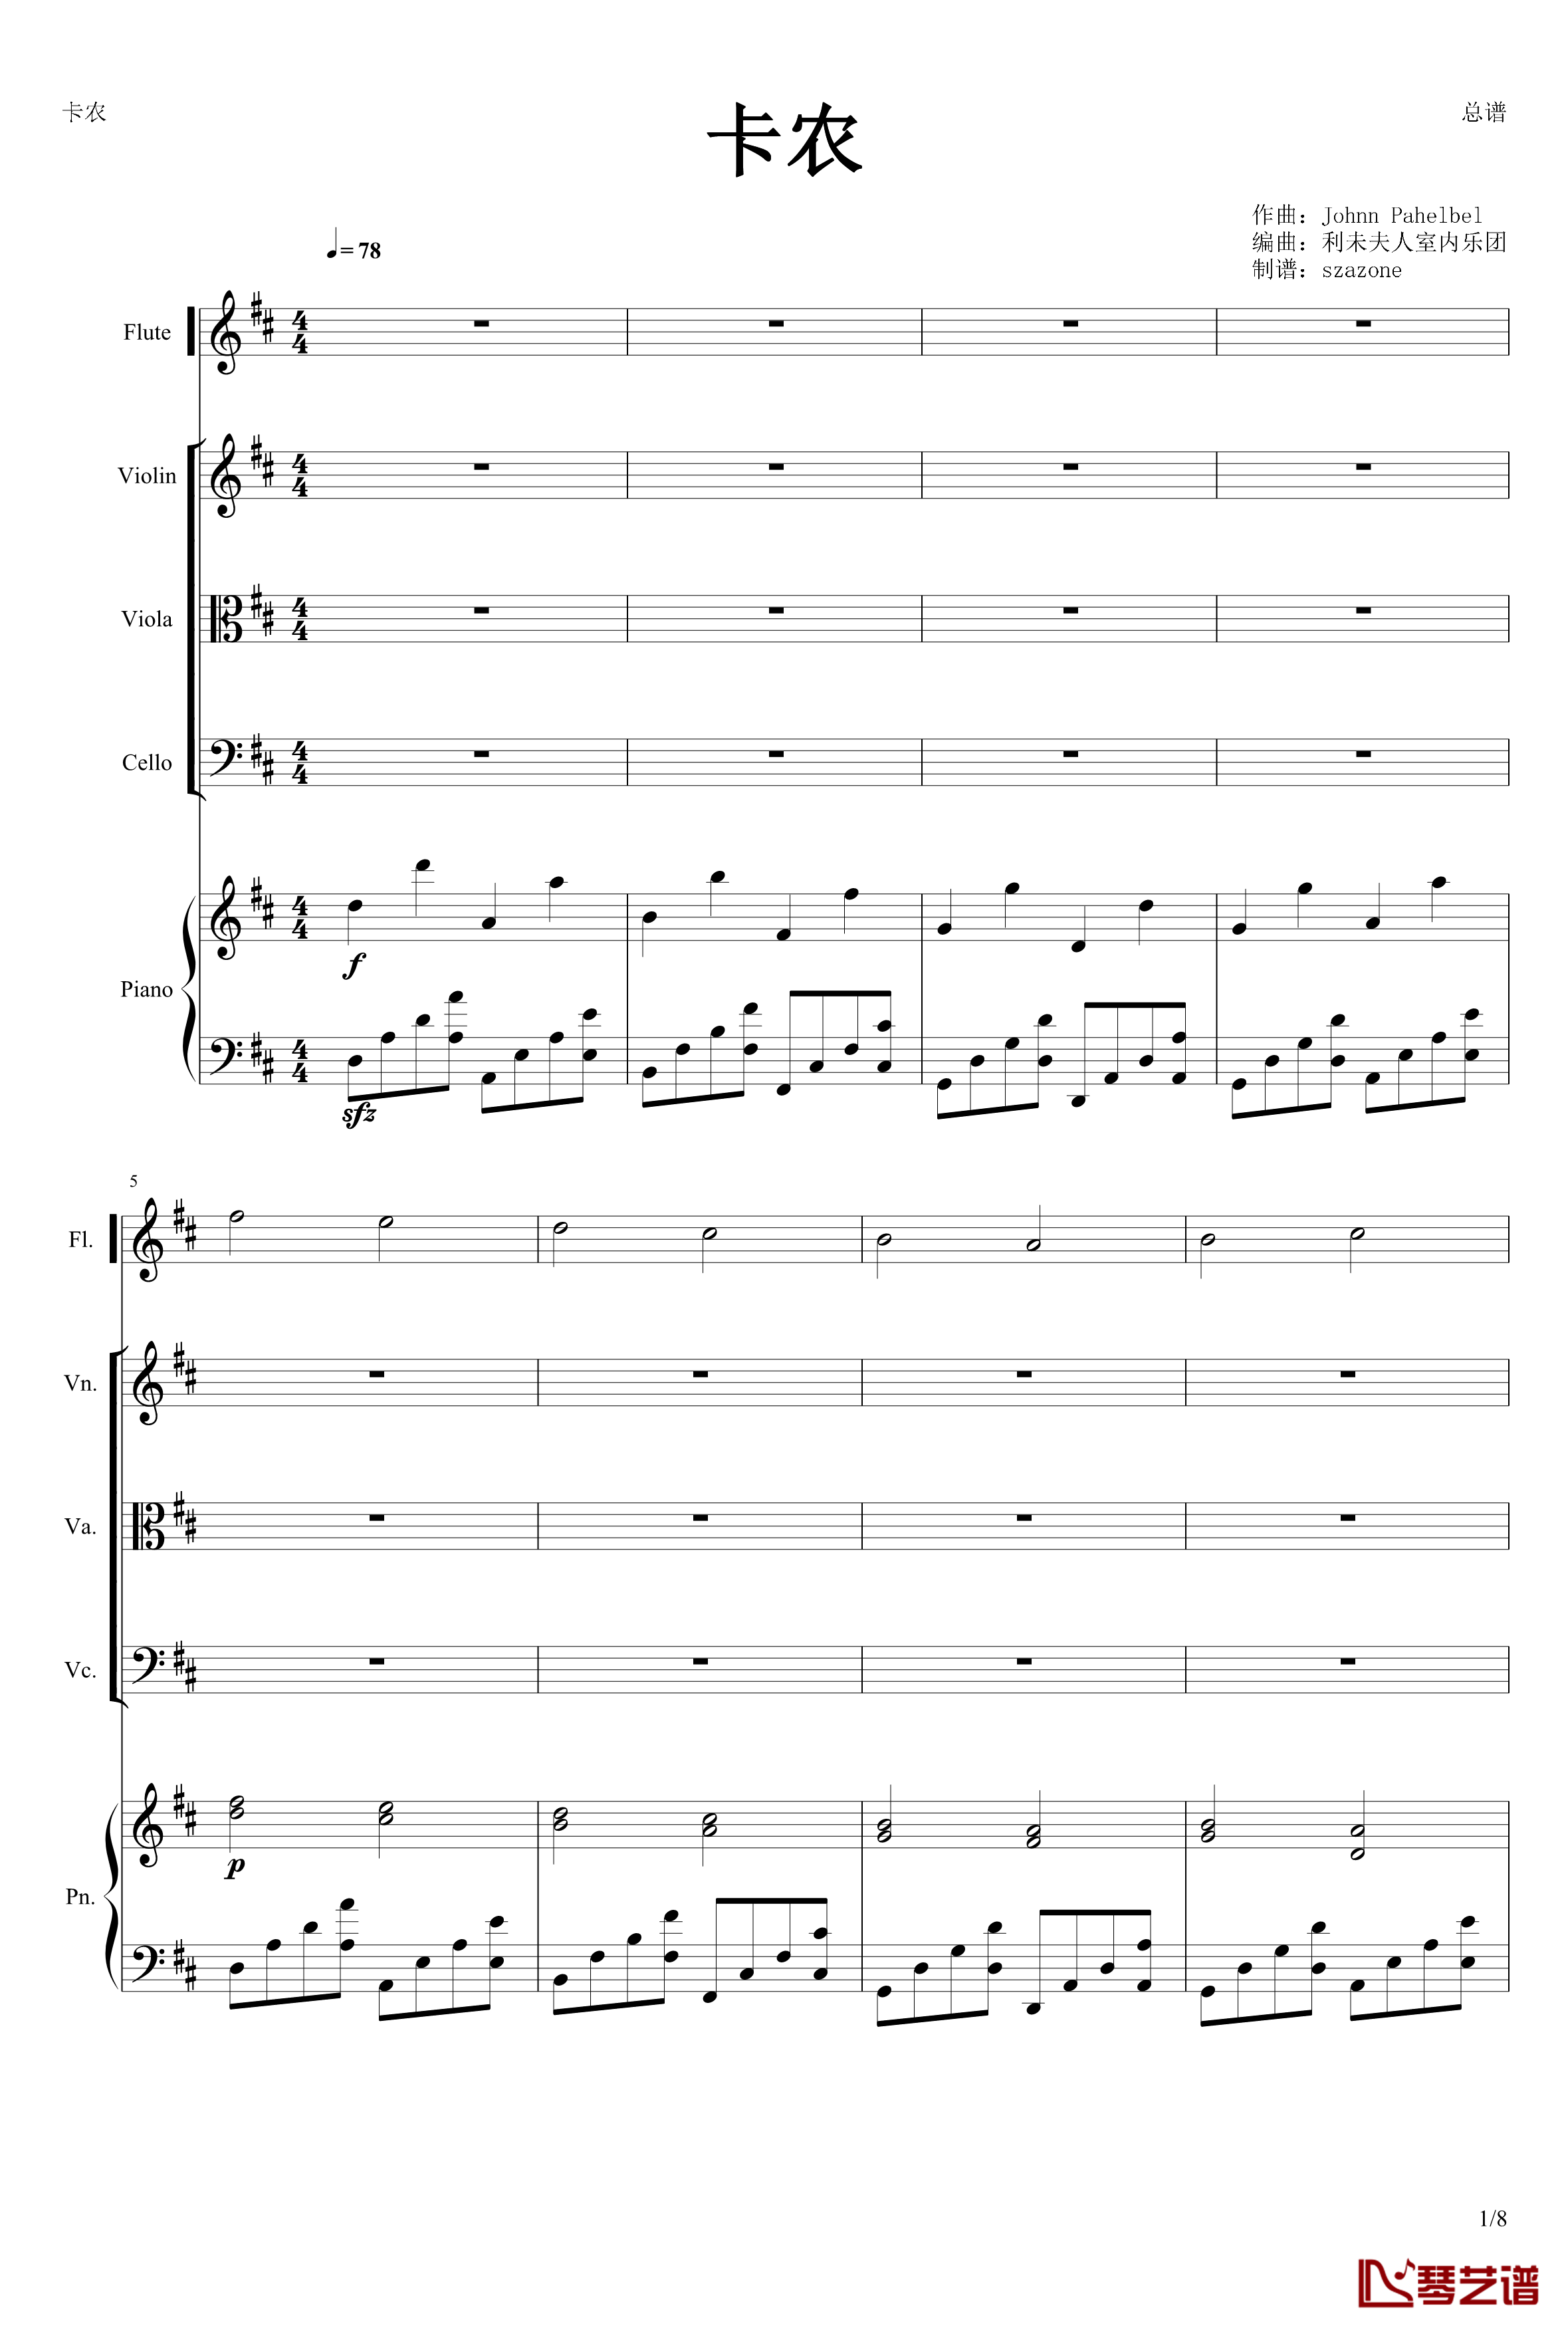 卡农钢琴谱-(长笛+小提琴+中提琴+大提琴+钢琴）-帕赫贝尔-Pachelbel1